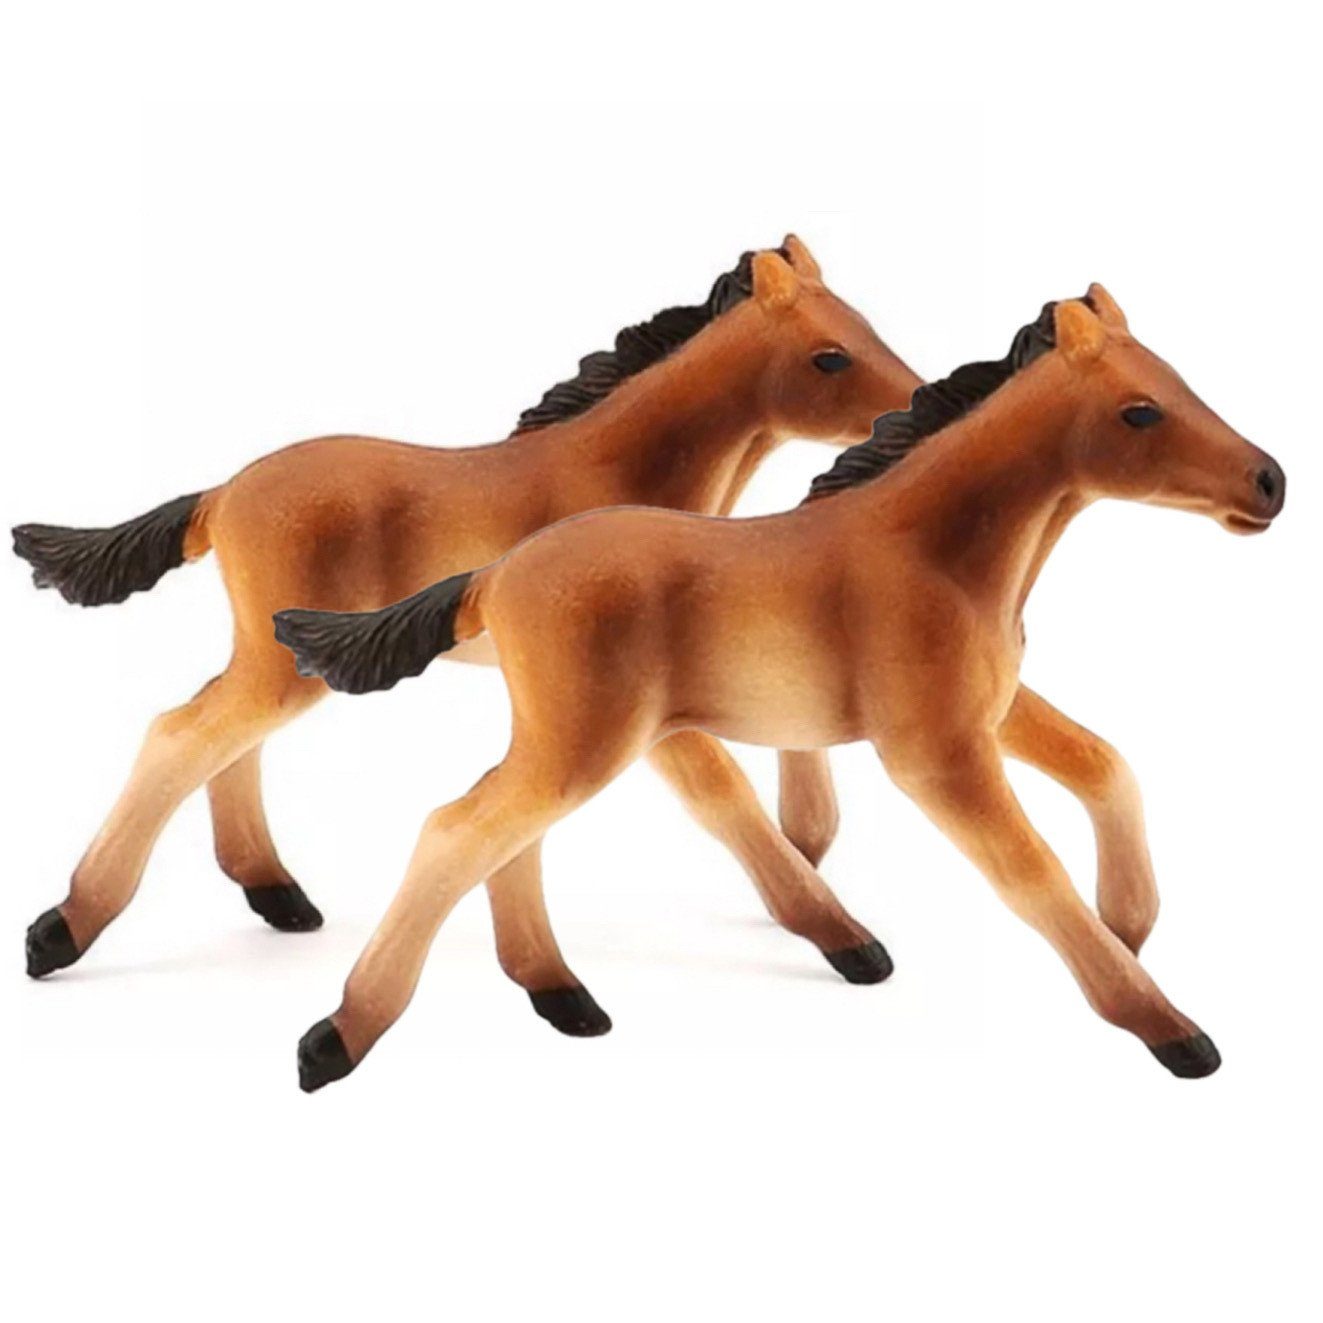 SCRTD Tierfigur Tierfiguren, 2 Ornamente,Kinderspielzeug, Kinder Figuren Stück Simulation Tiermodell,Kinderspielzeug,für Pferd